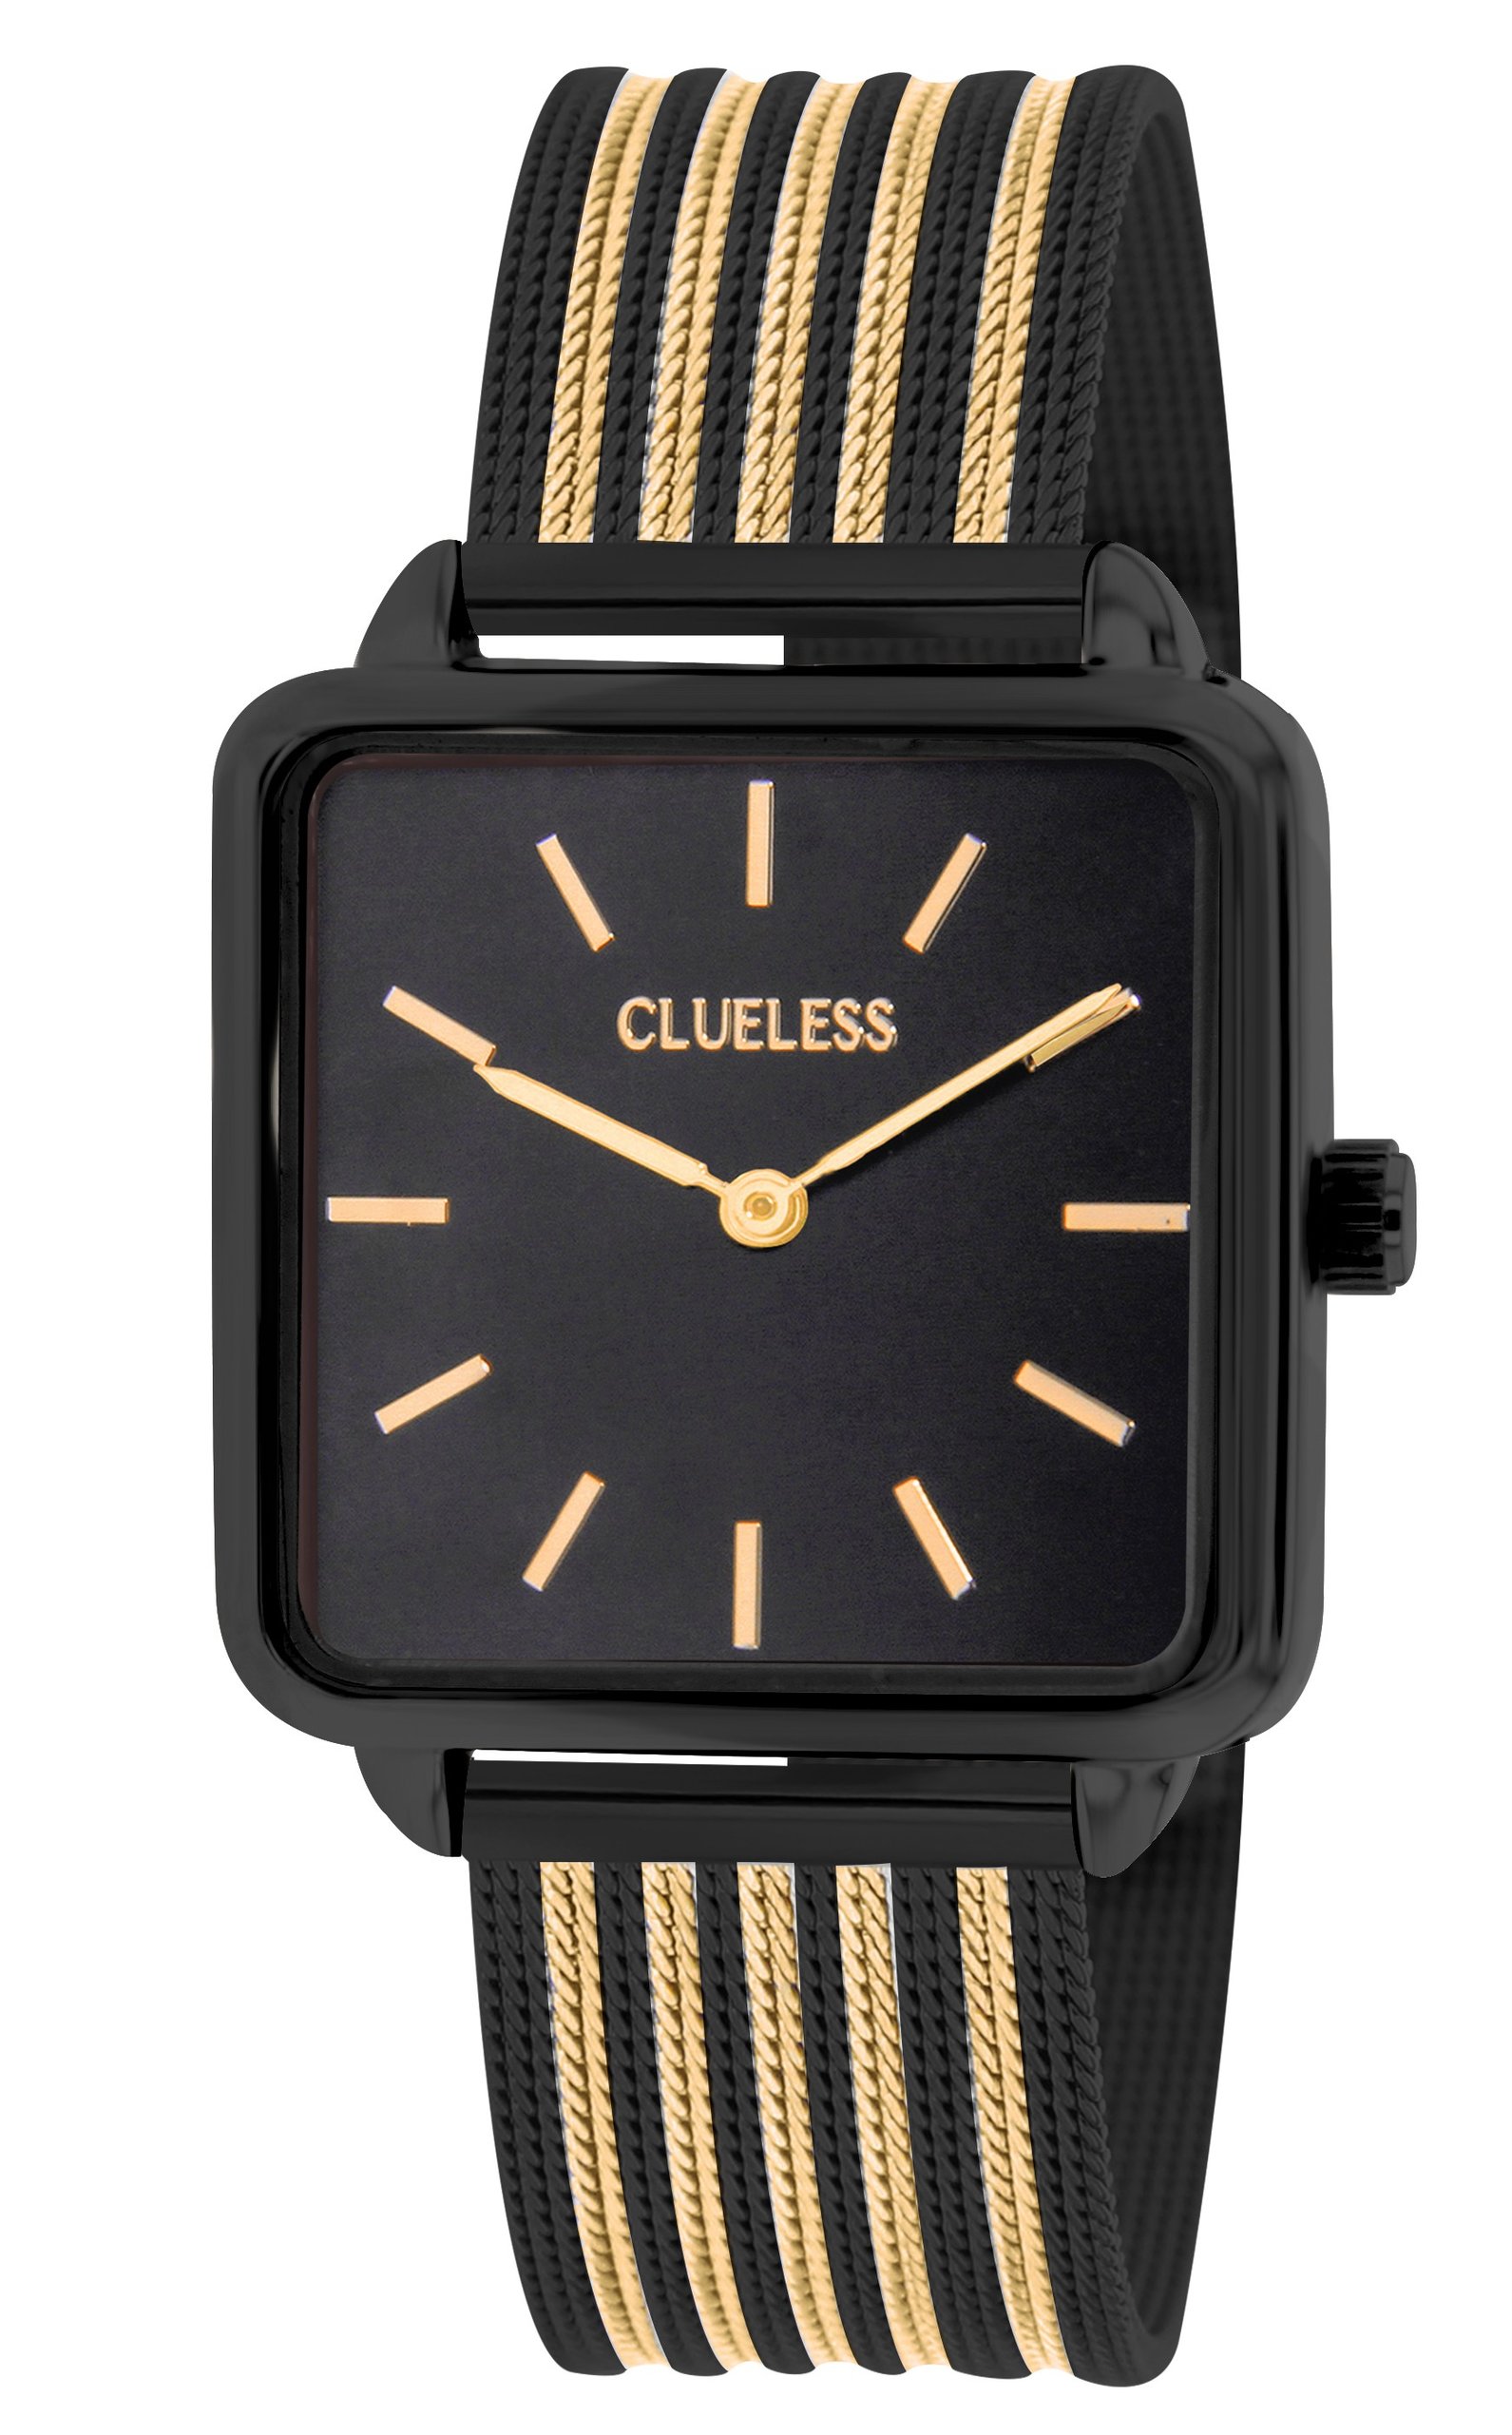 Dámské hodinky s nerezovým páskem v černo-zlaté barvě Clueless